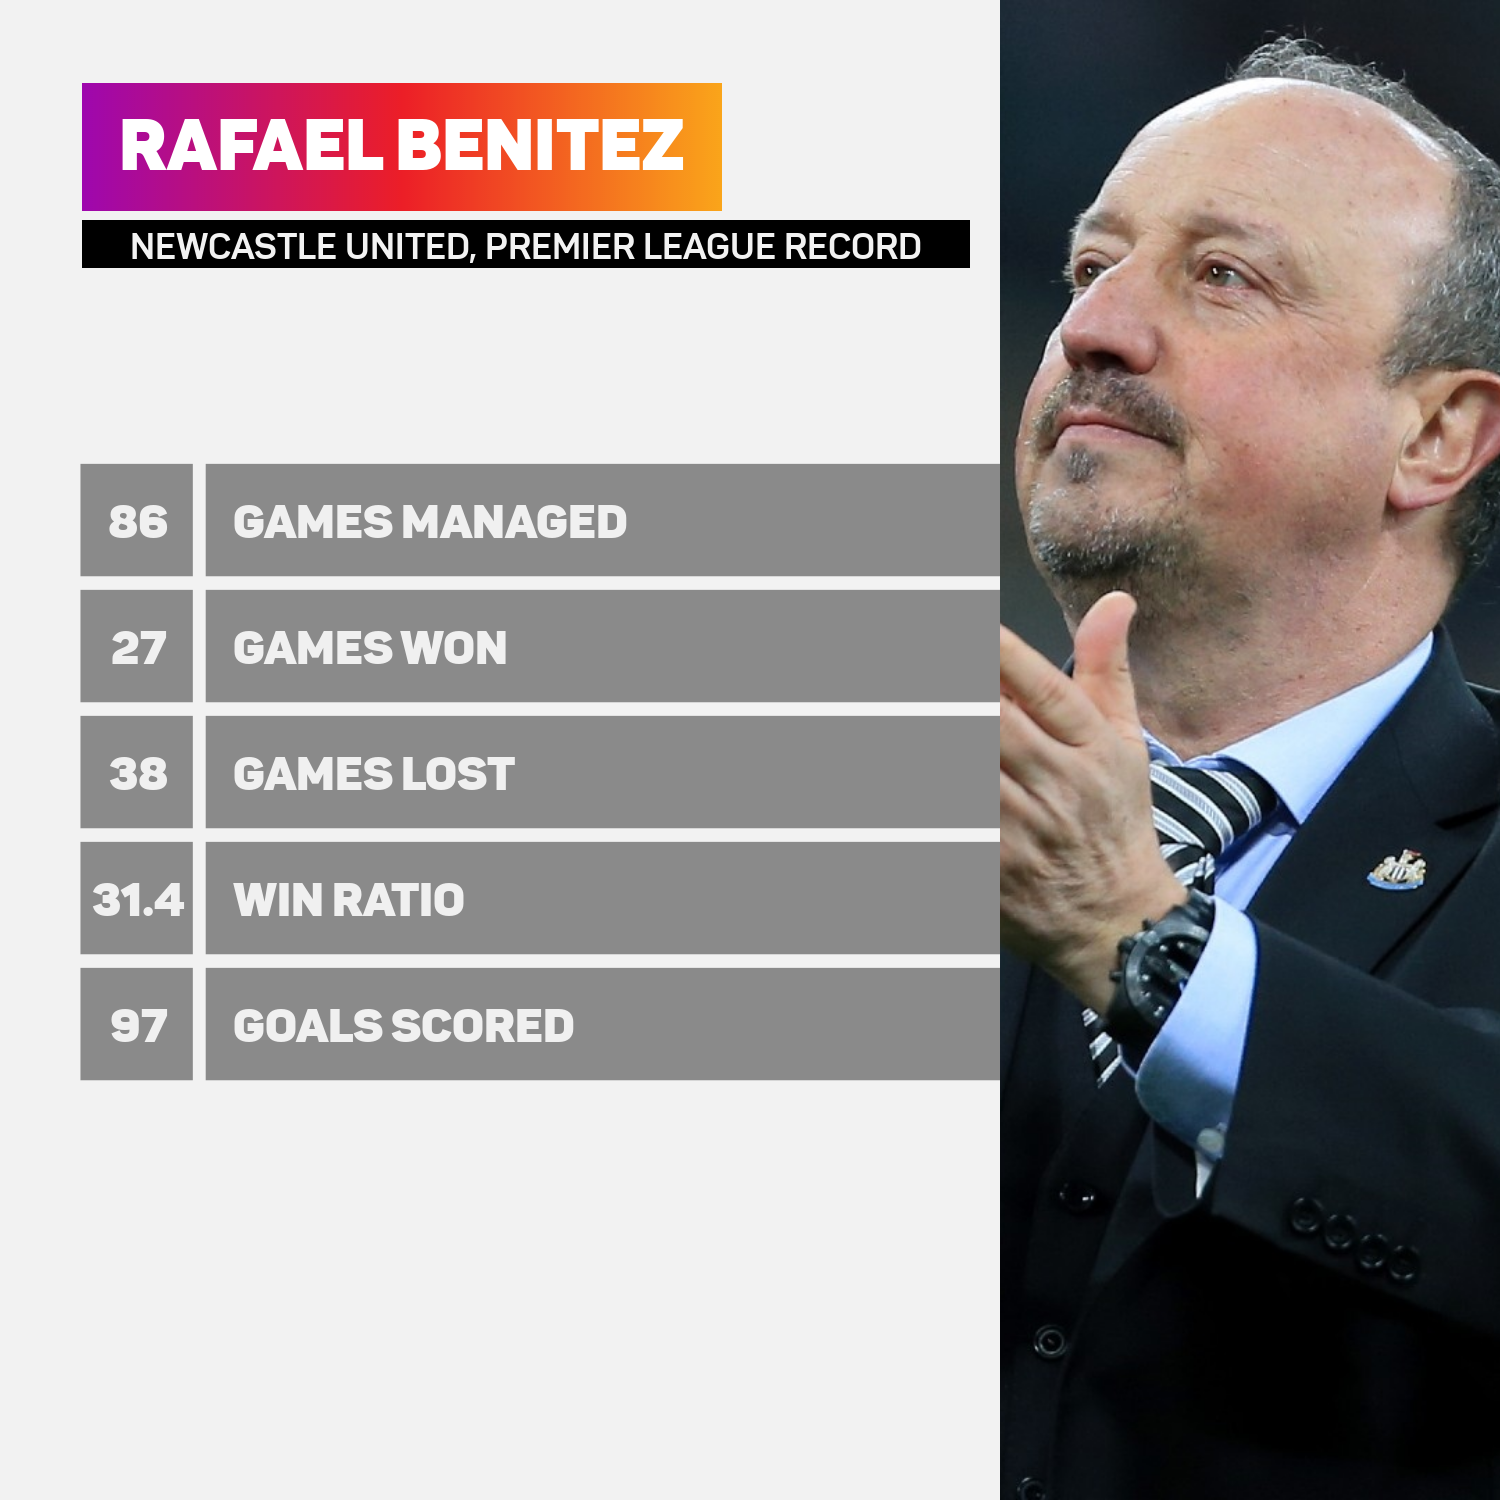 Rafael Benitez's Premier League record at Newcastle United